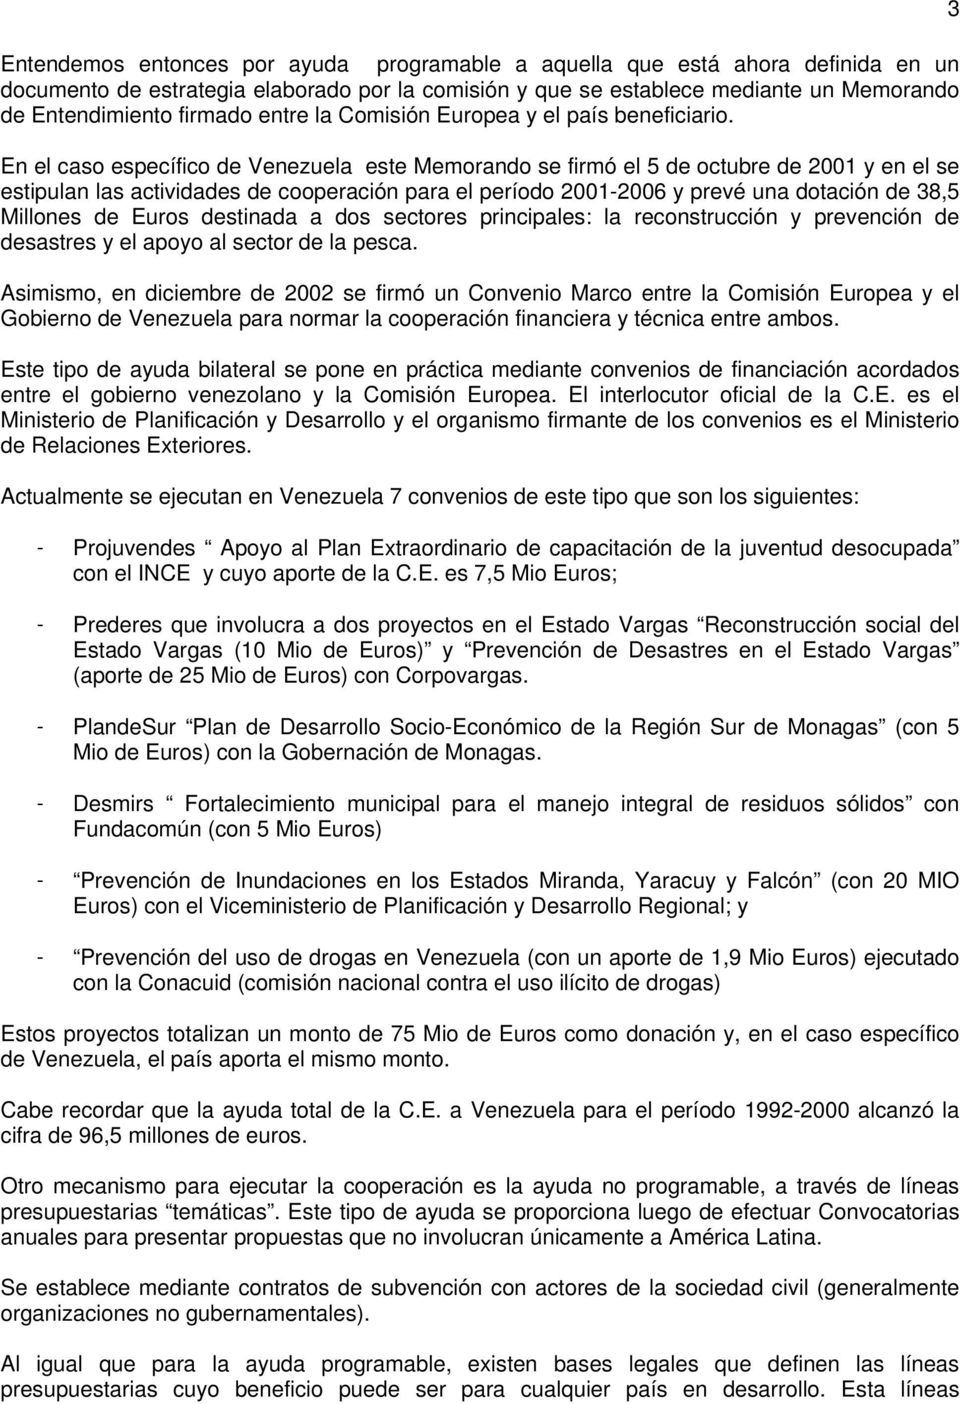 En el caso específico de Venezuela este Memorando se firmó el 5 de octubre de 2001 y en el se estipulan las actividades de cooperación para el período 2001-2006 y prevé una dotación de 38,5 Millones